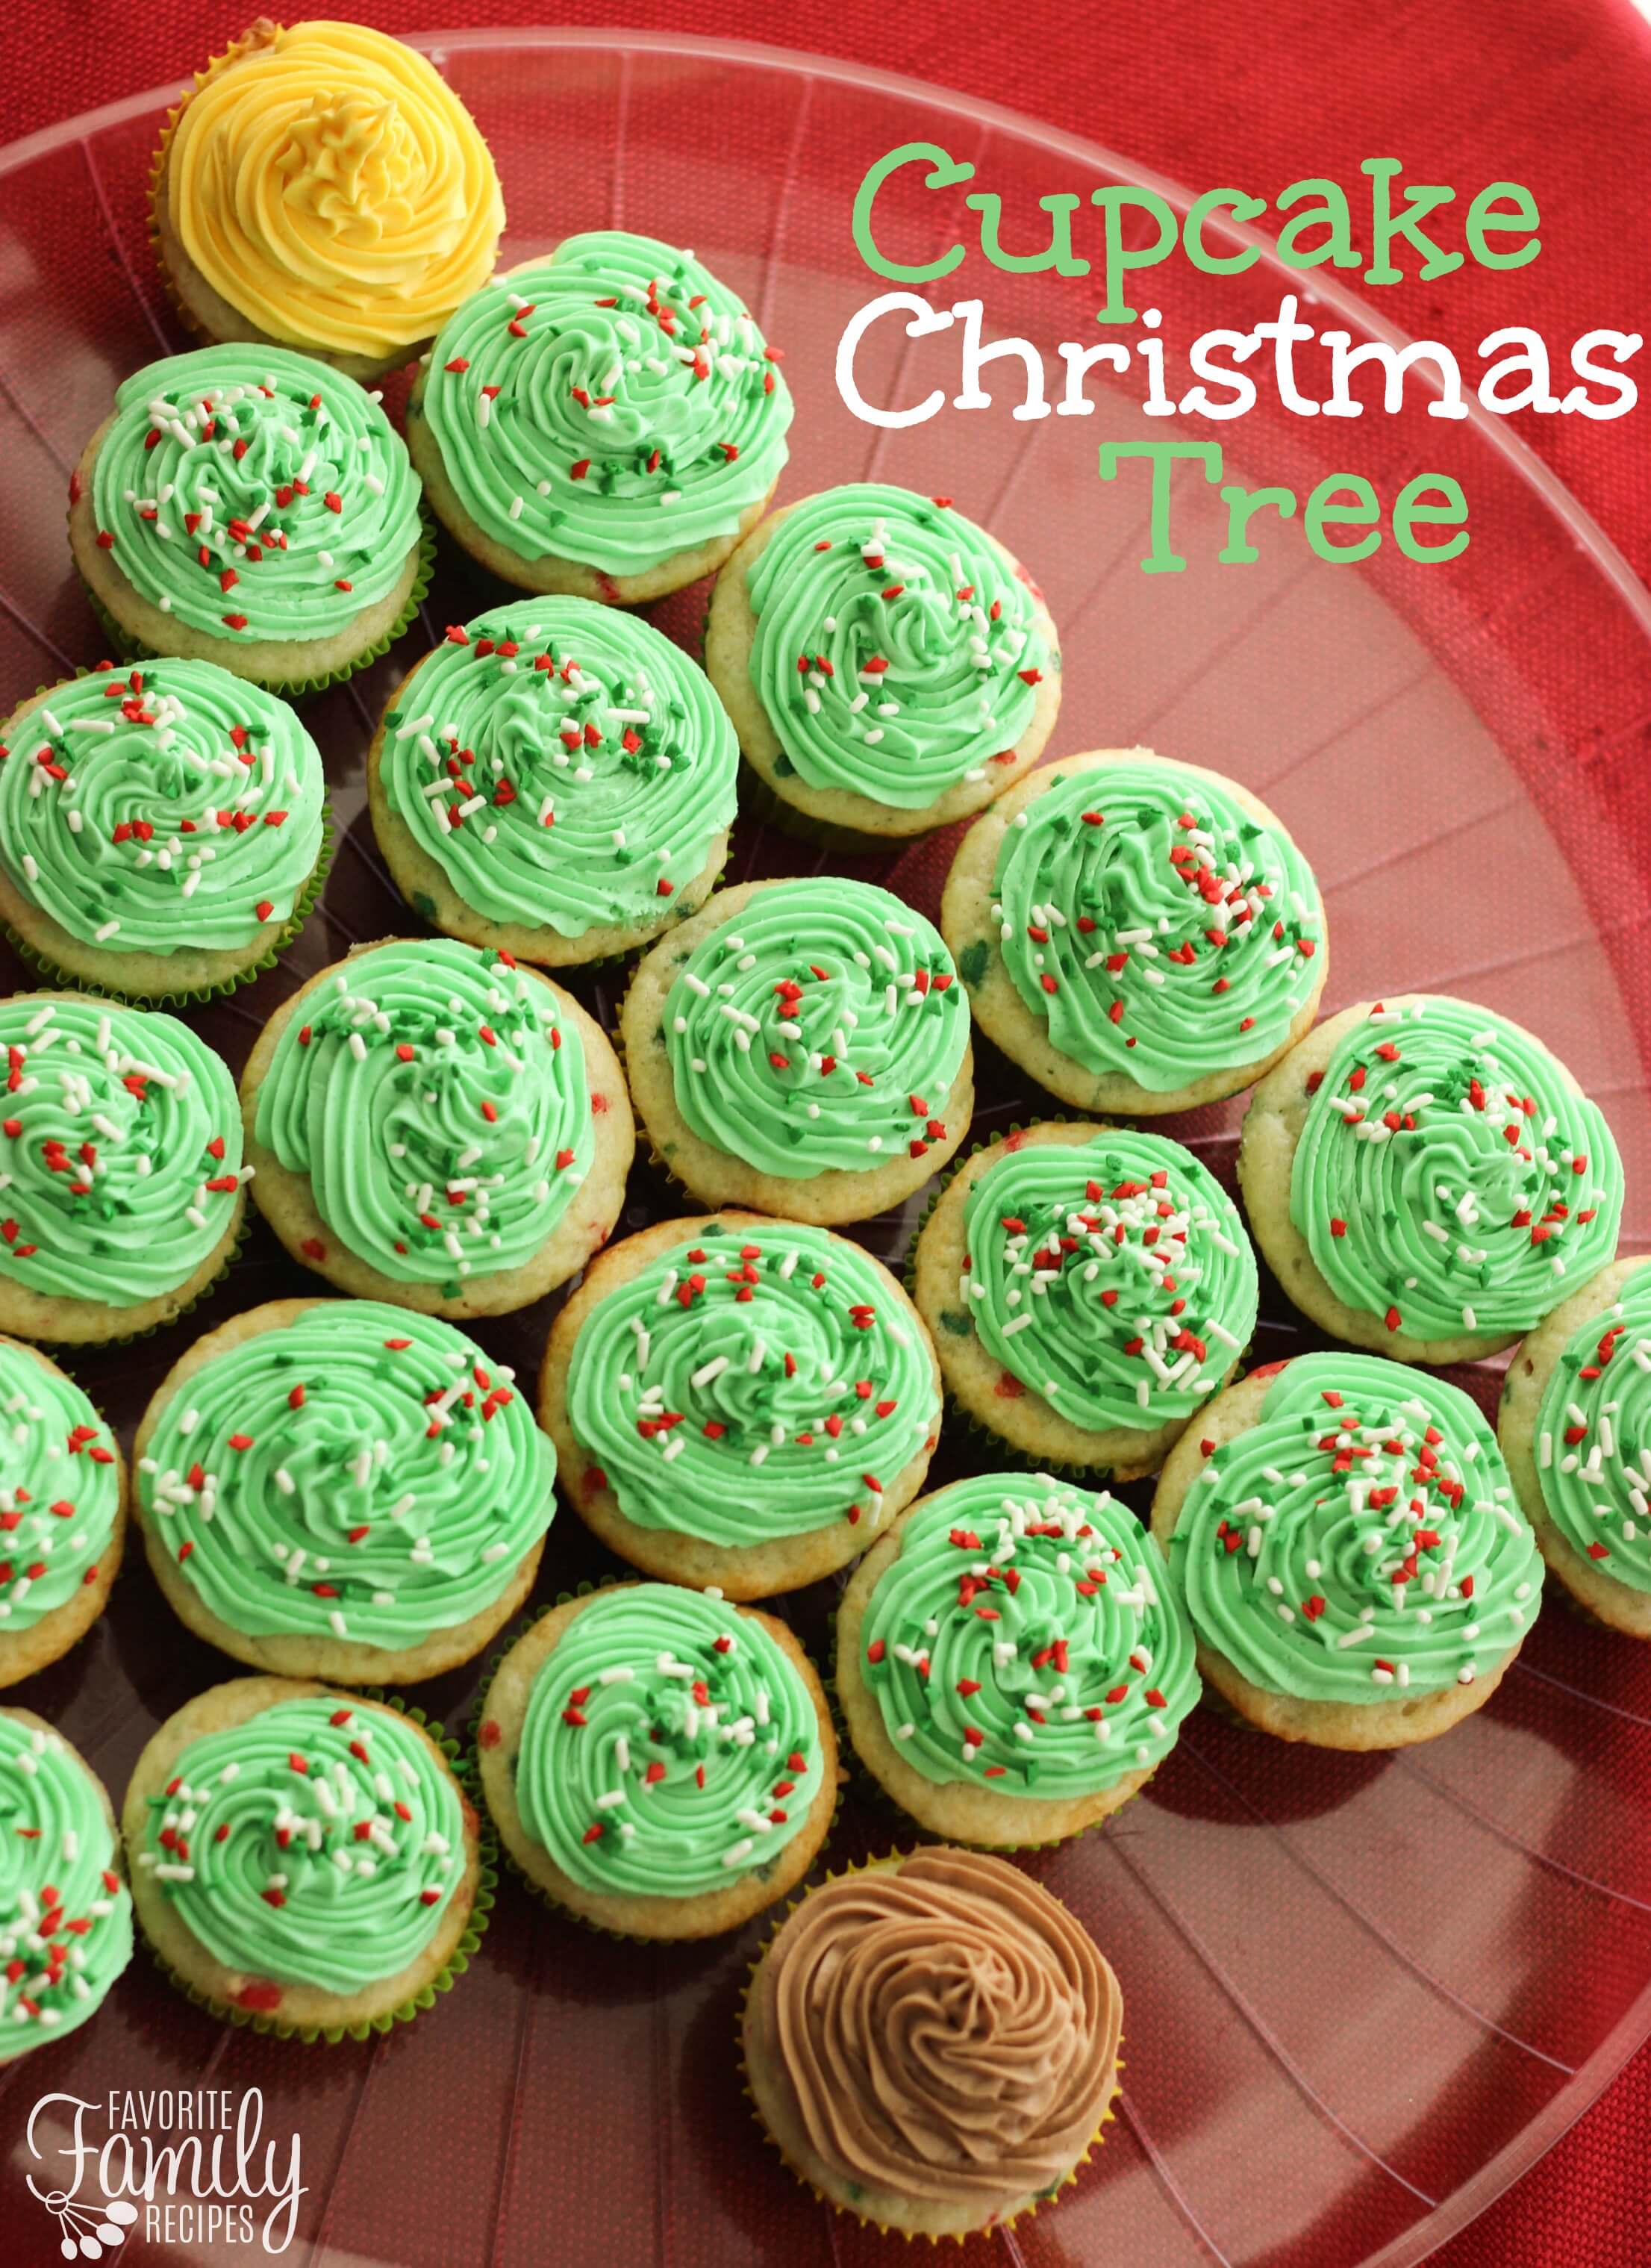 Cupcake Christmas Tree | Favorite Family Recipes